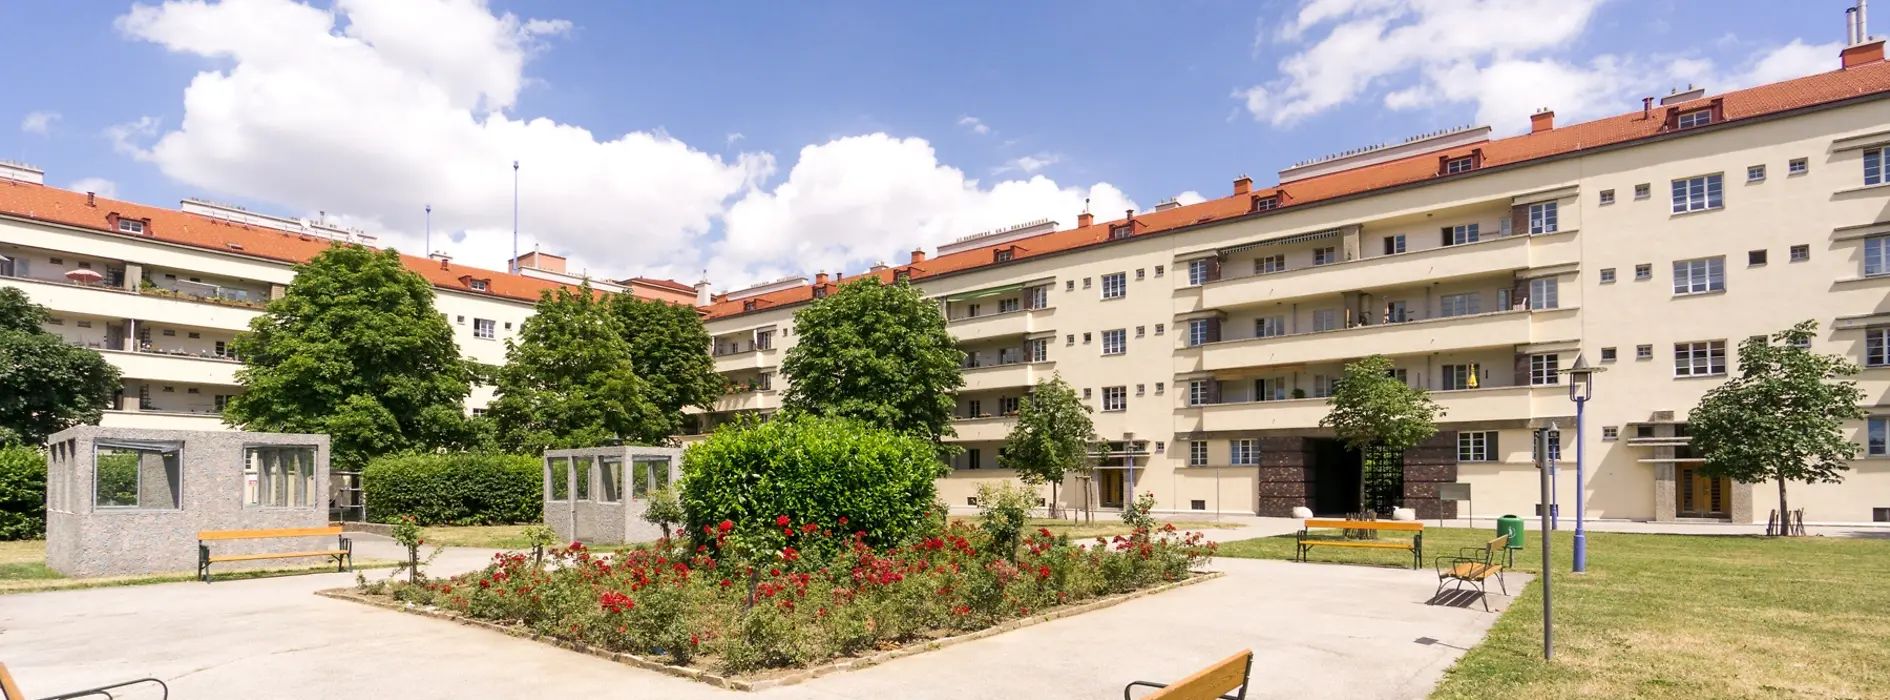 Edificio de vivienda social, Karl Marx Hof, vista exterior, patio interno, parque